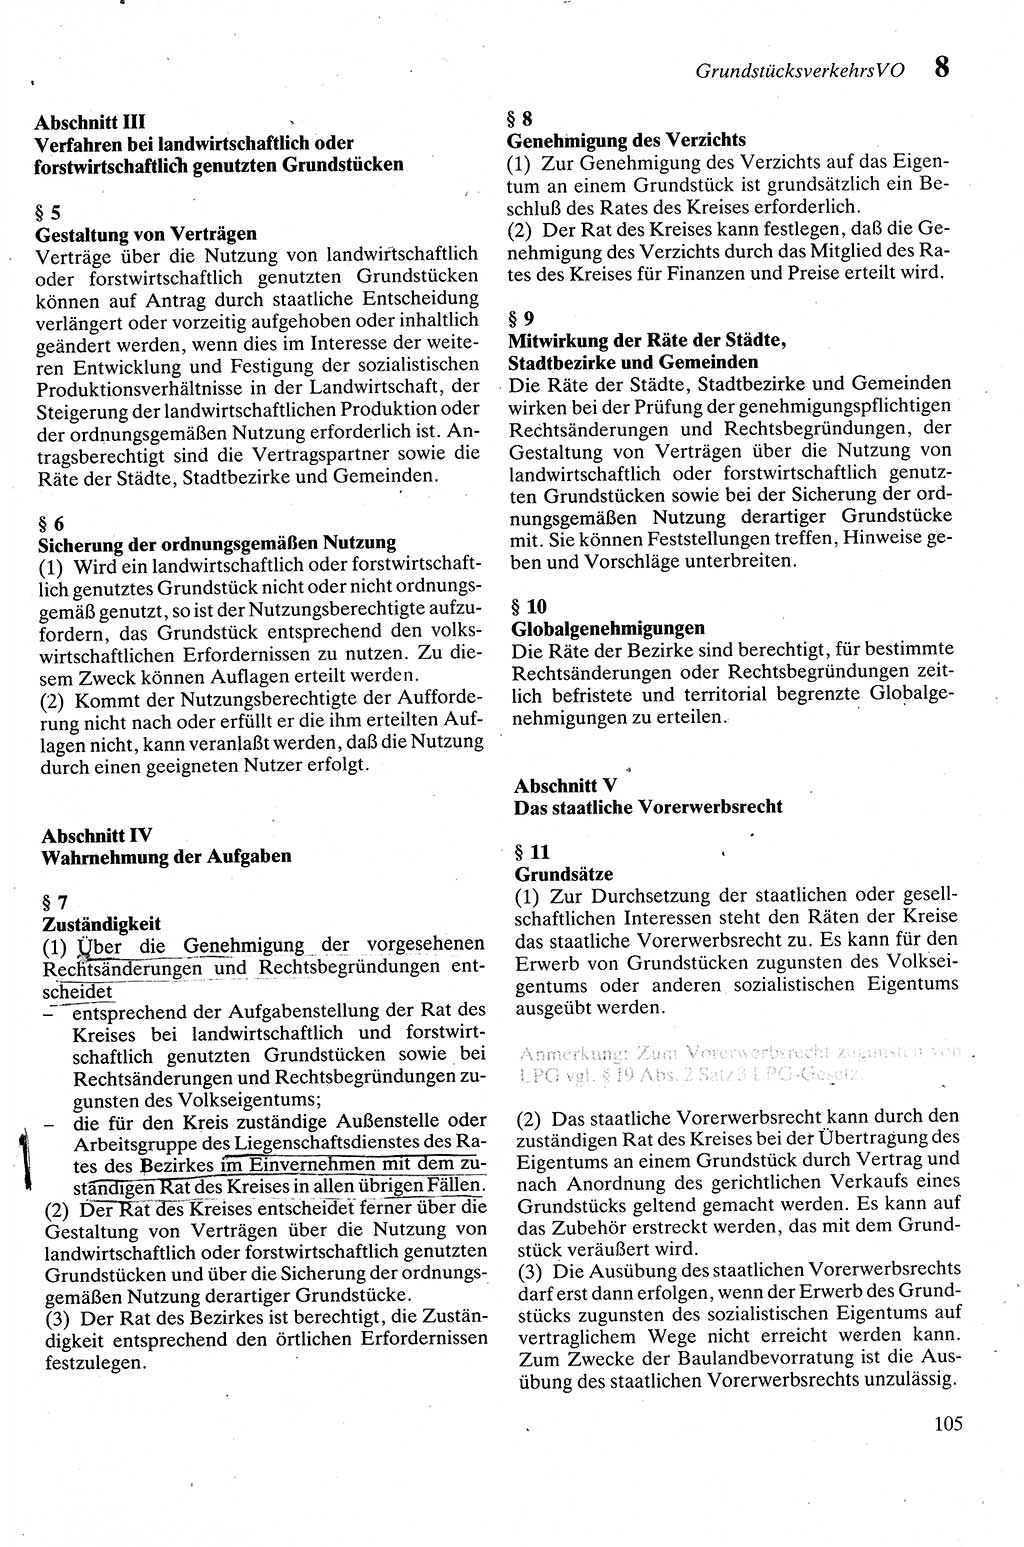 Zivilgesetzbuch (ZVG) sowie angrenzende Gesetze und Bestimmungen [Deutsche Demokratische Republik (DDR)] 1975, Seite 105 (ZGB Ges. Best. DDR 1975, S. 105)